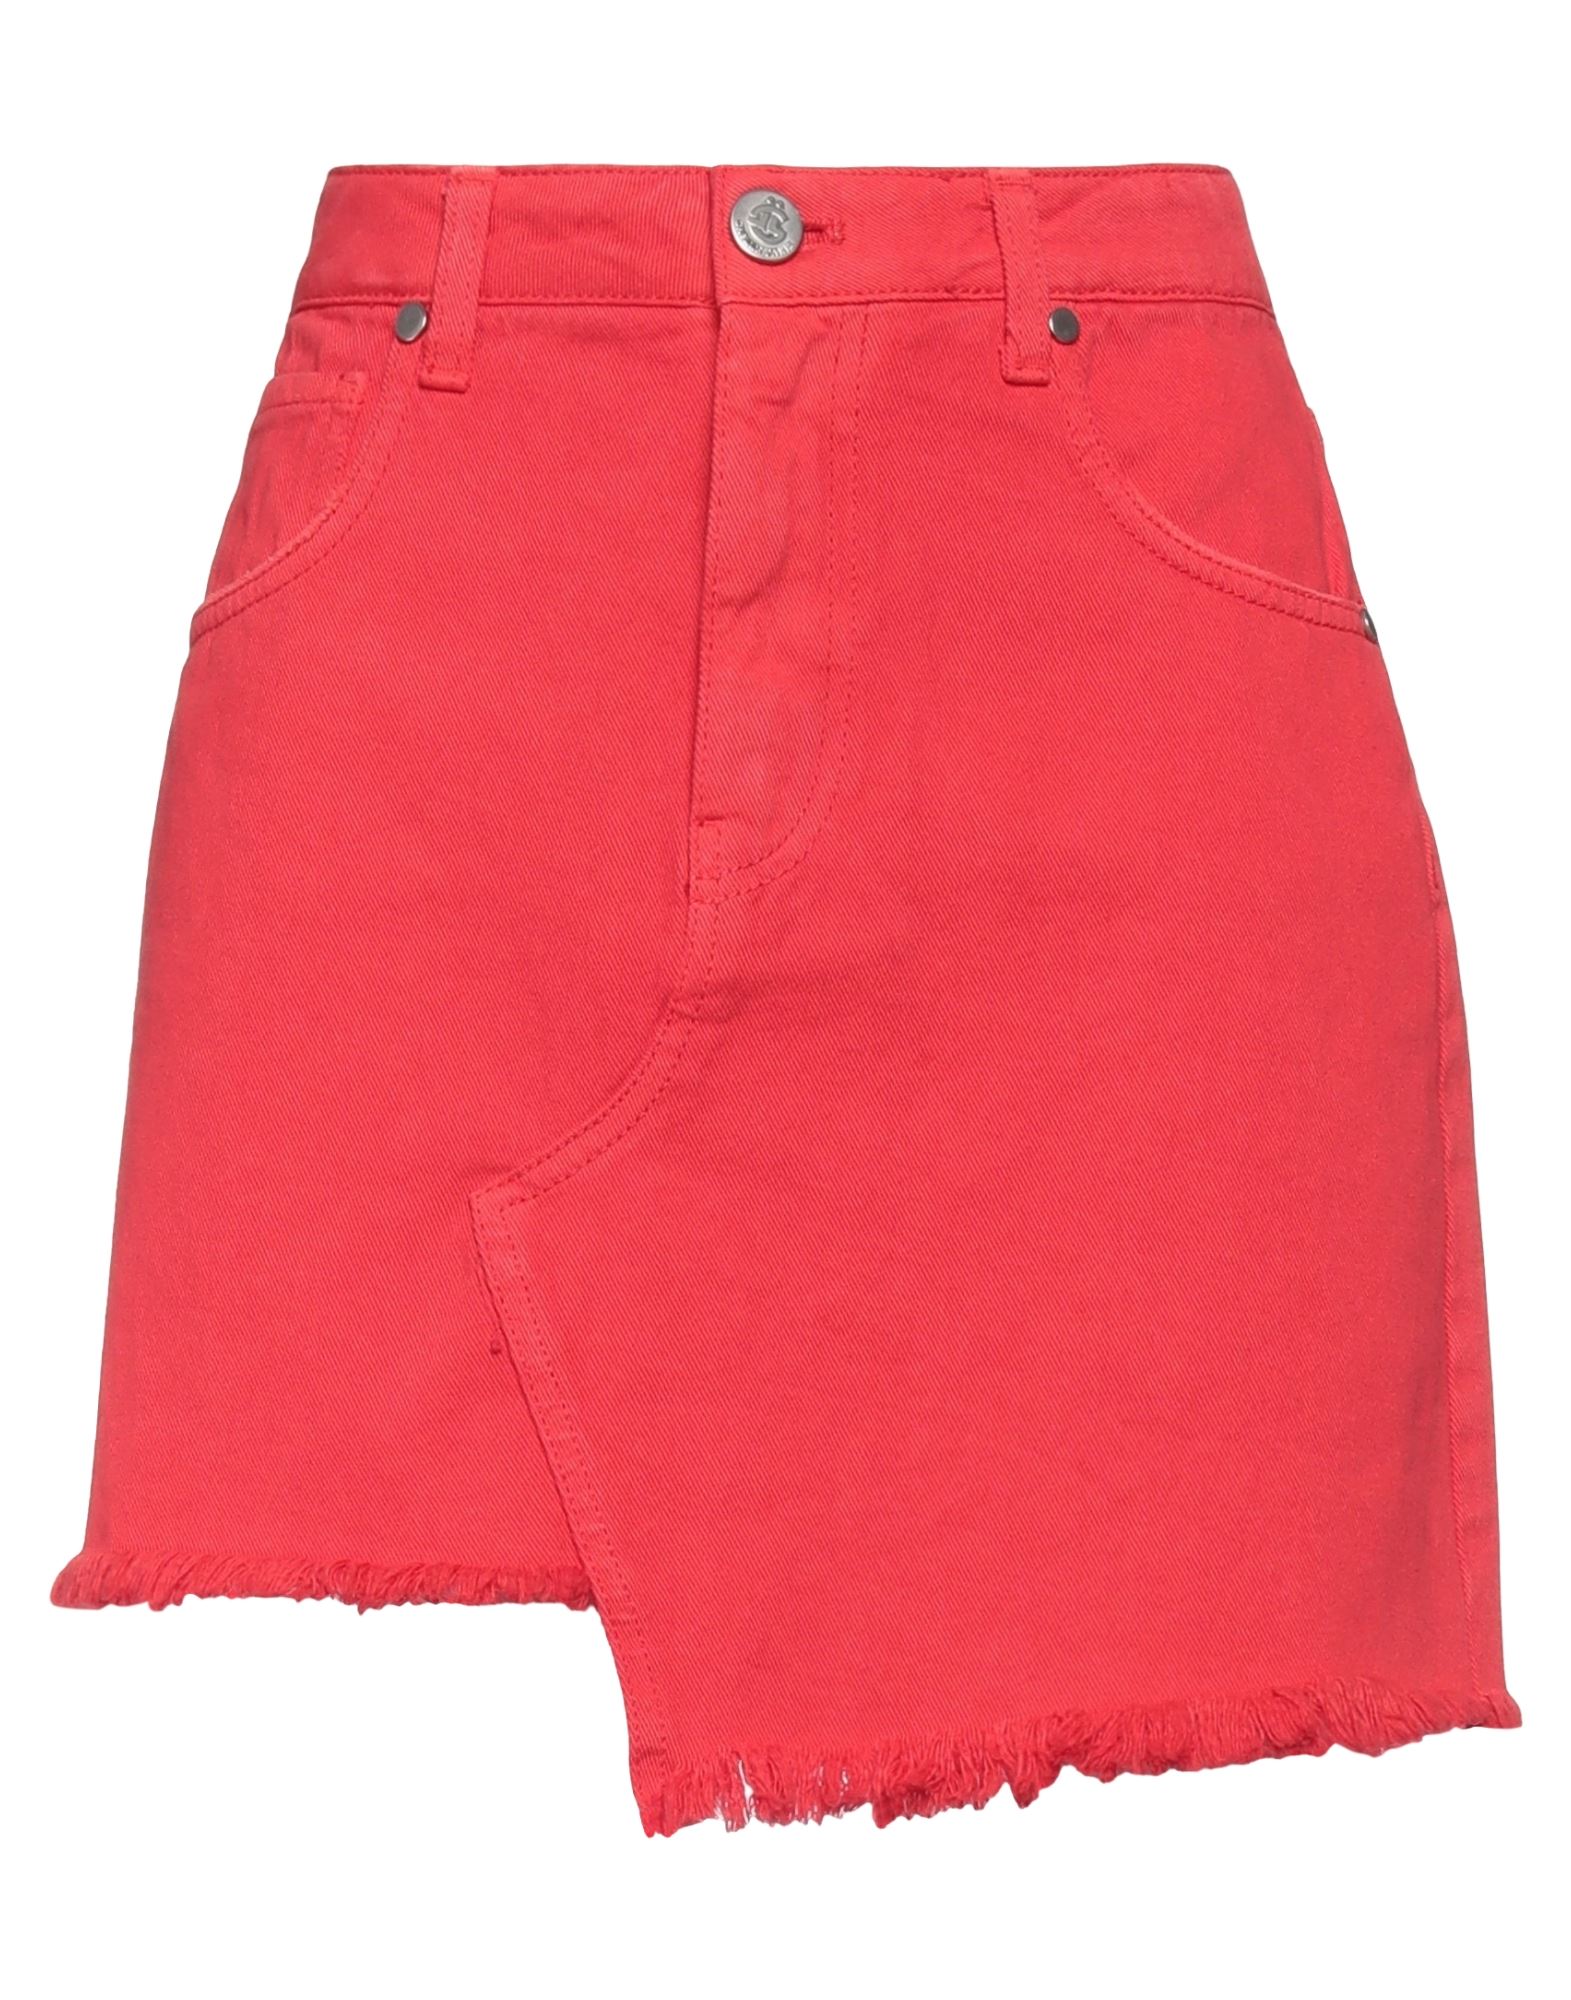 Gaelle Paris Denim Skirts In Red